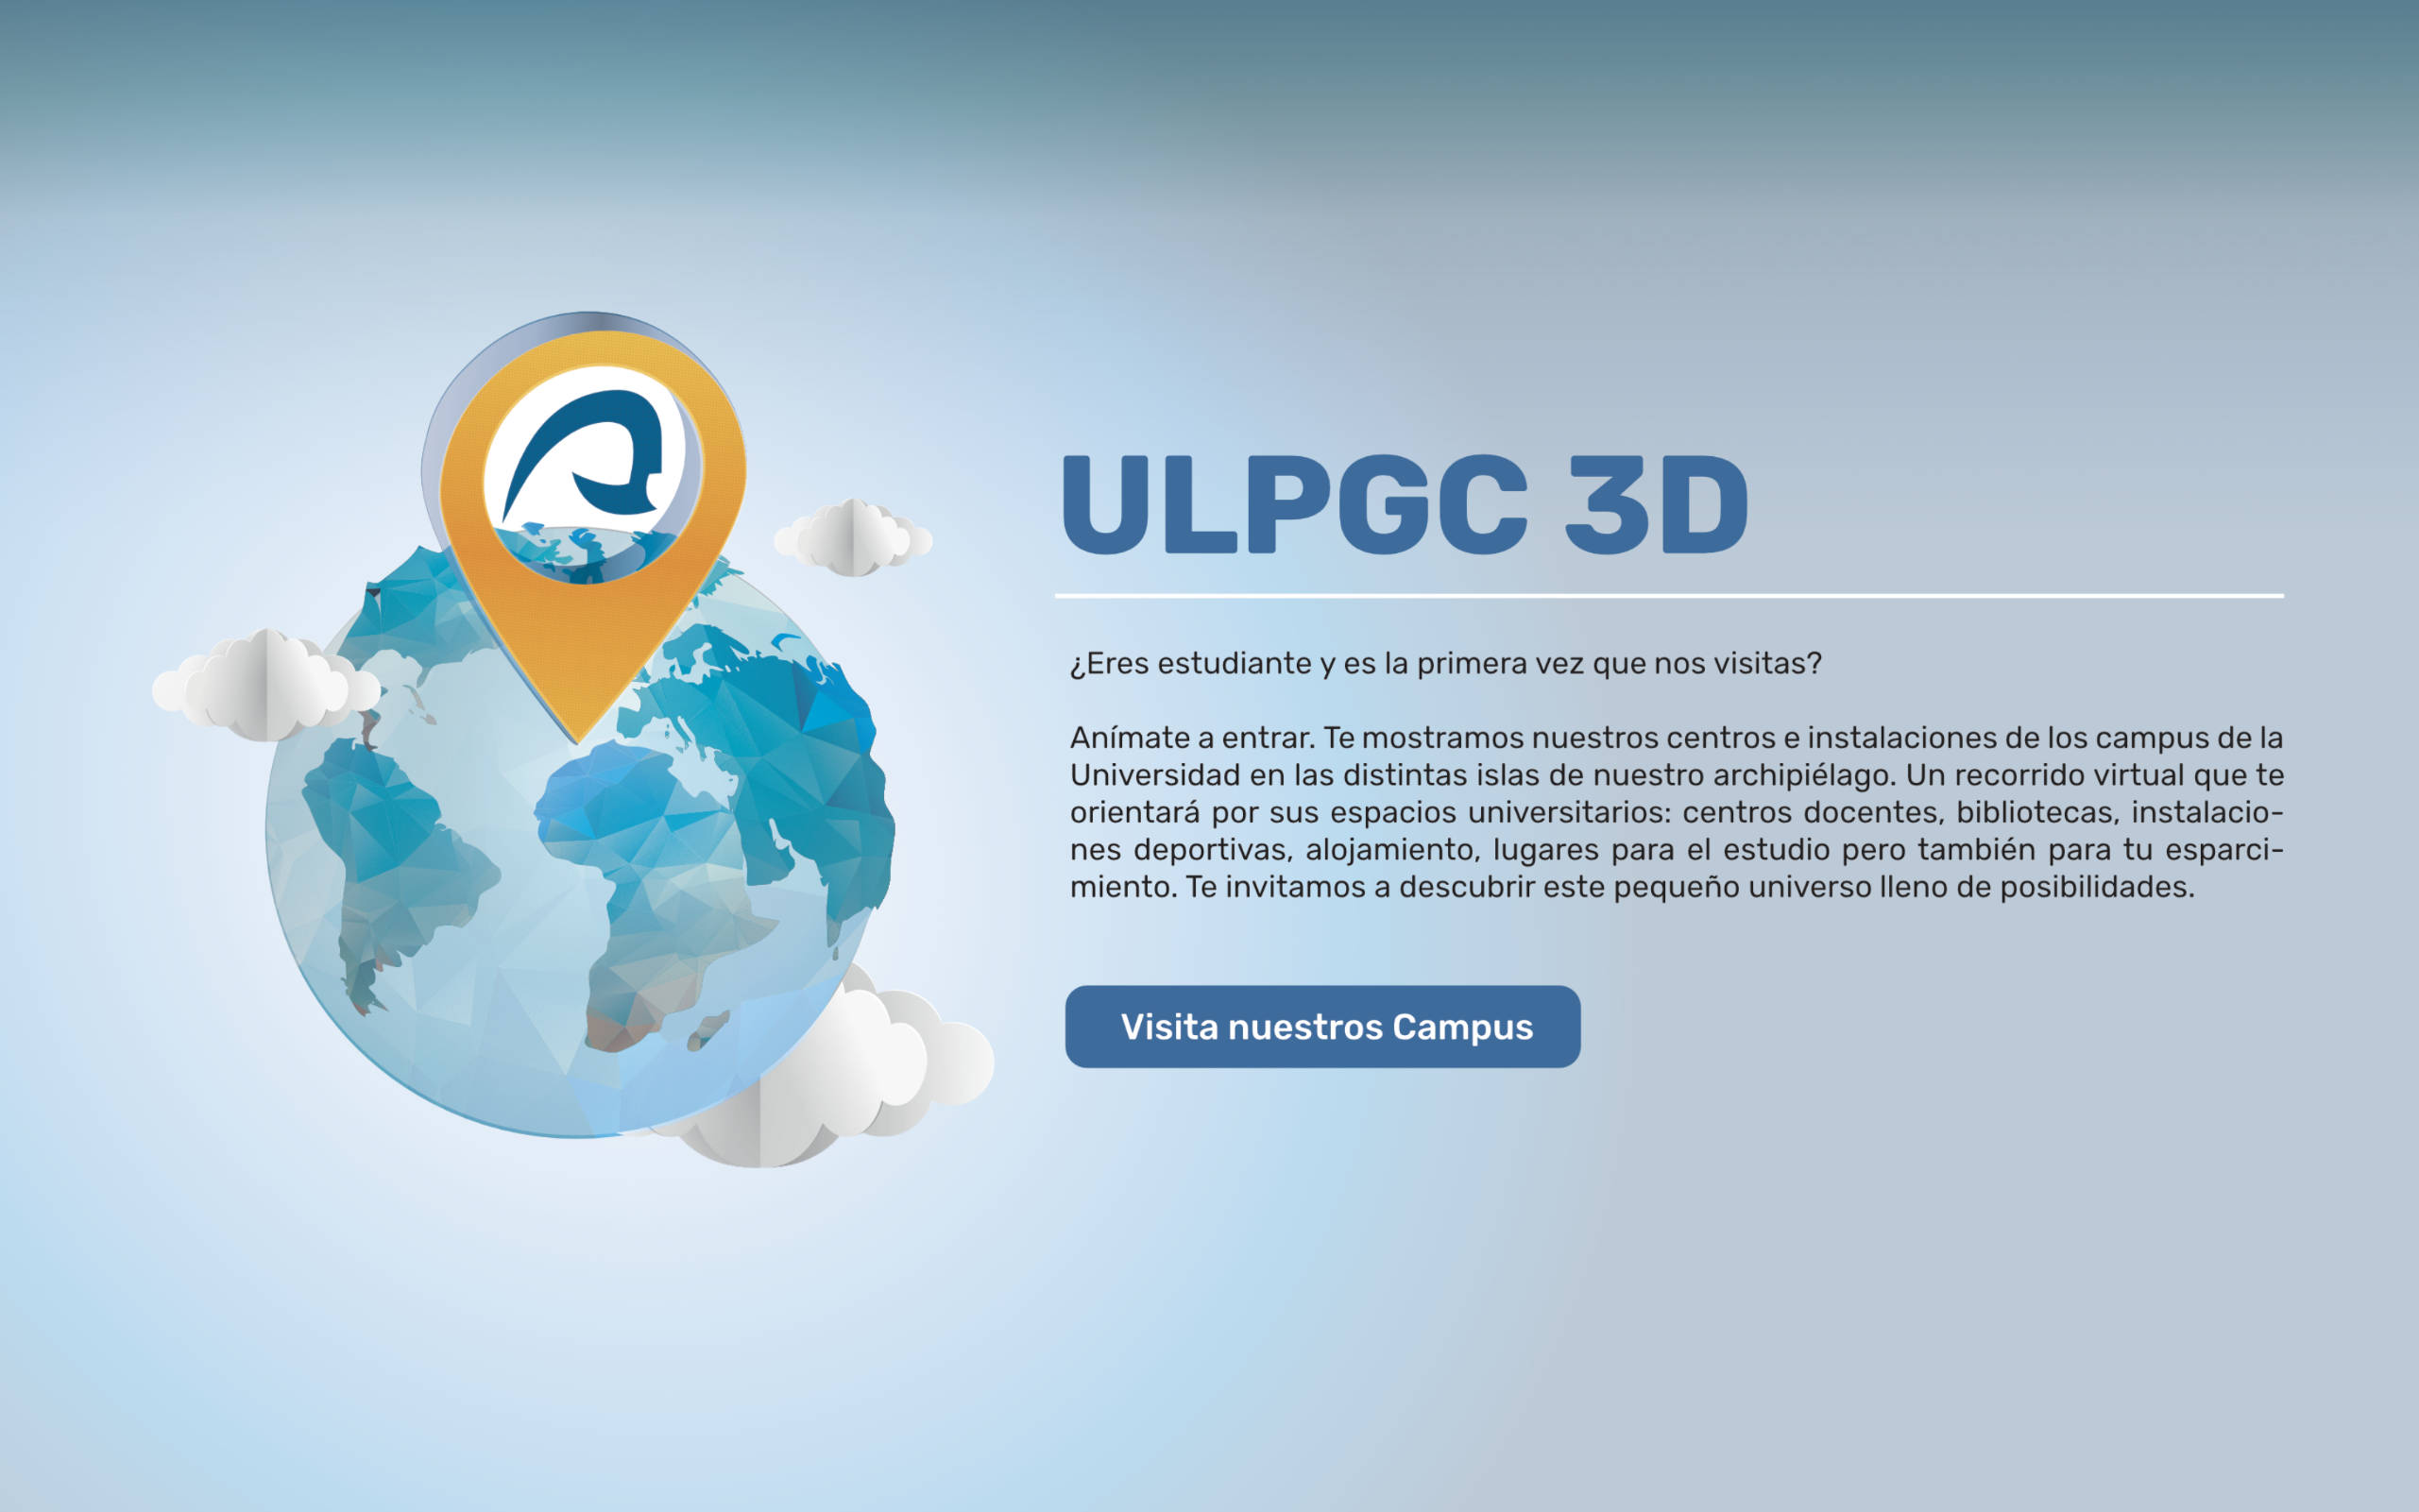 ULPGC 3D